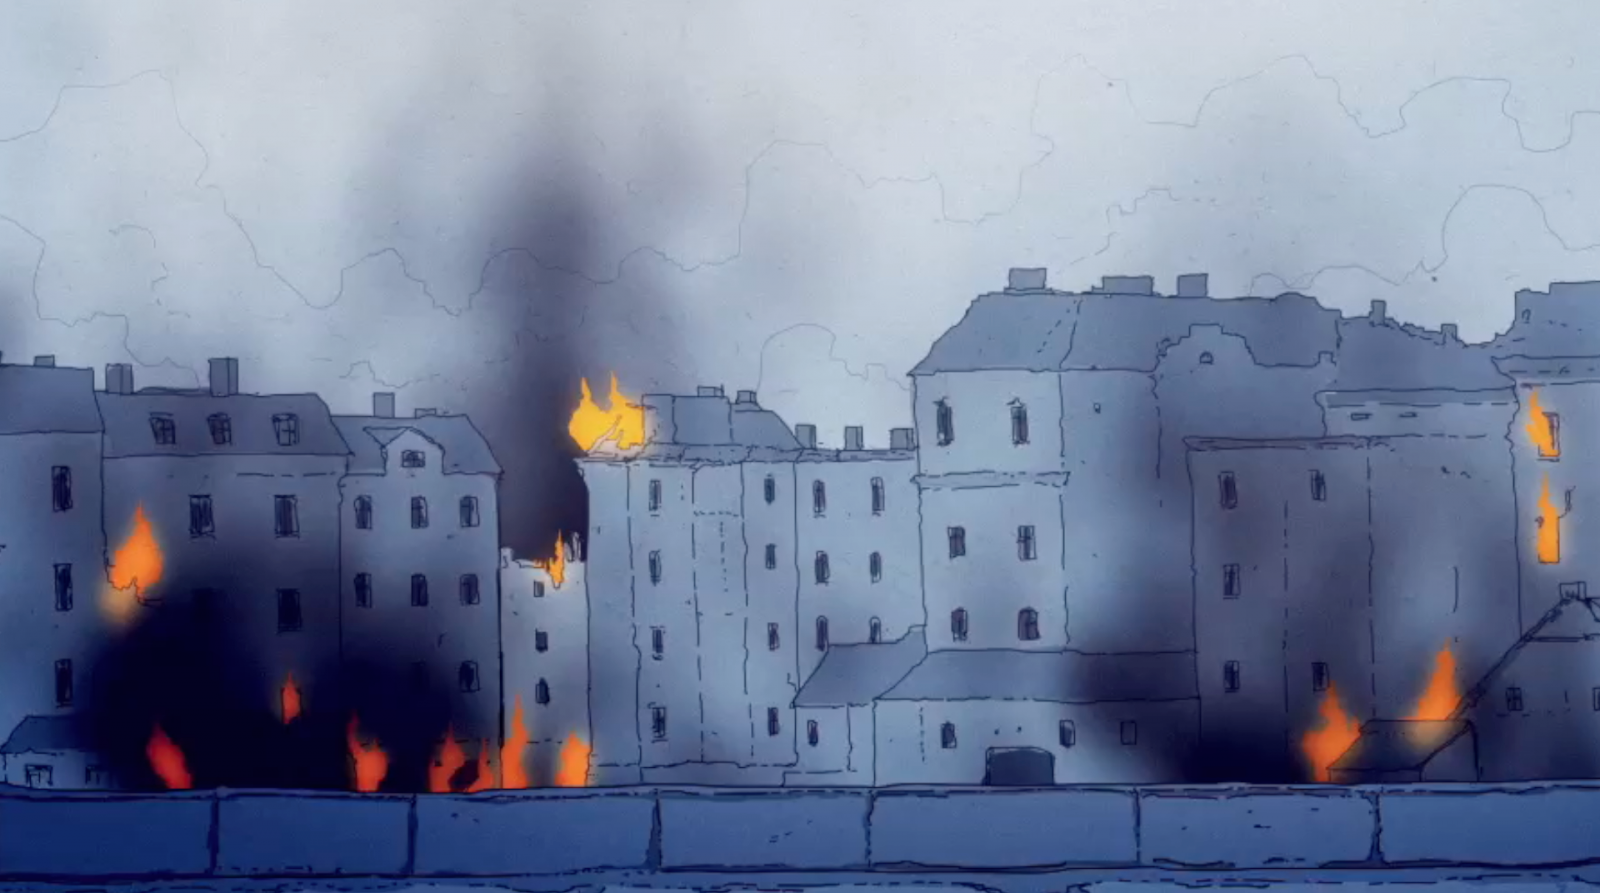 Kadr z filmu "Nie było żadnej nadziei", przedstawia płonące getto warszawskie